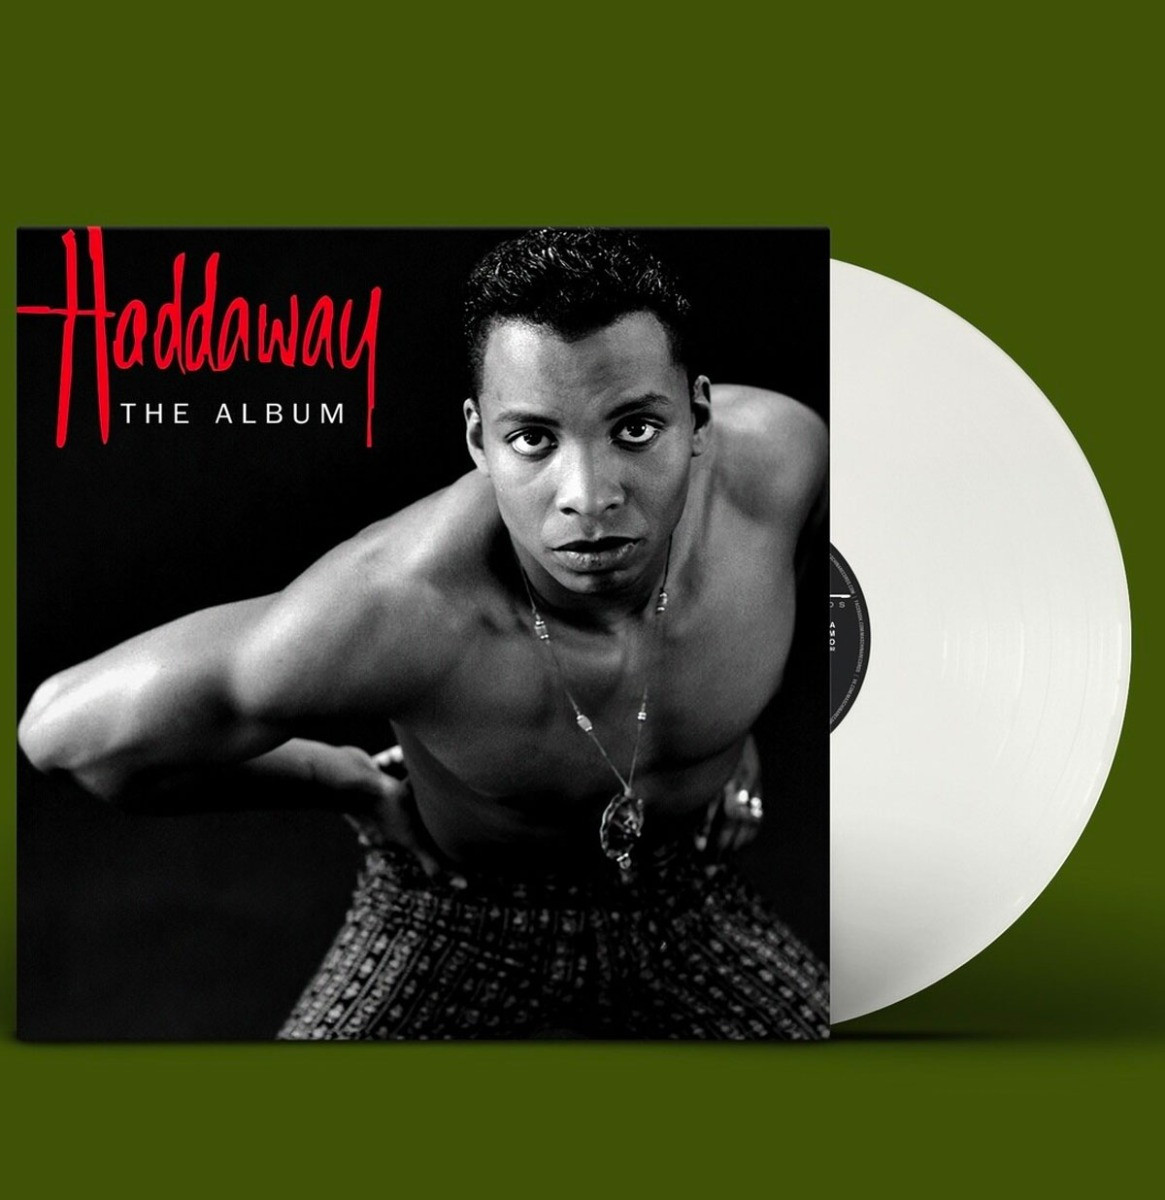 Haddaway - The Album LP White Vinyl - ZEER GELIMITEERD